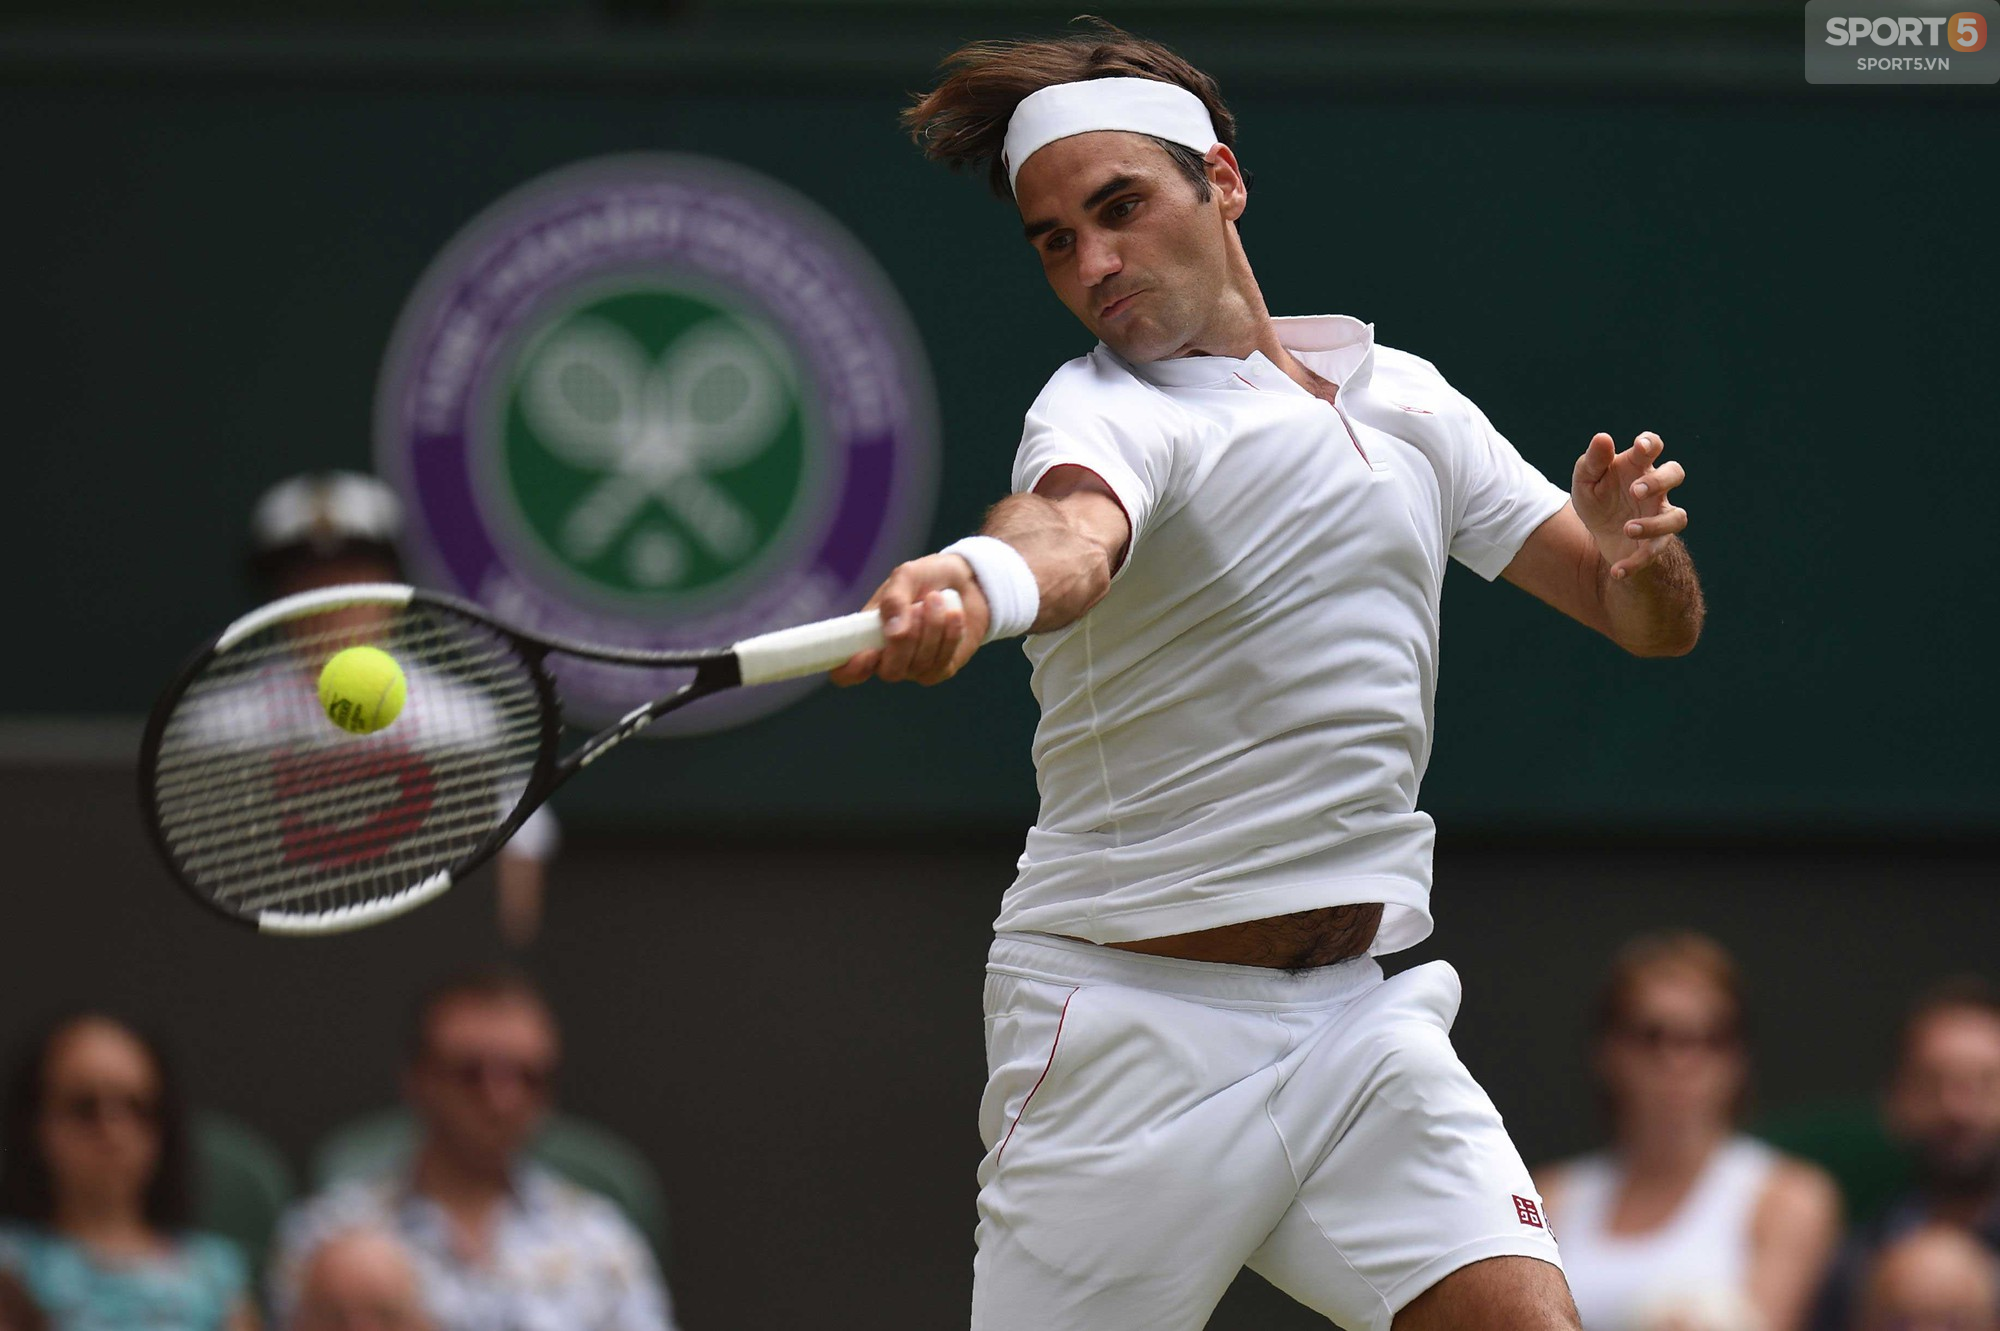 Nhận sự ủng hộ to lớn trên khán đài, Federer lần thứ 16 vào tứ kết Wimbledon - Ảnh 3.